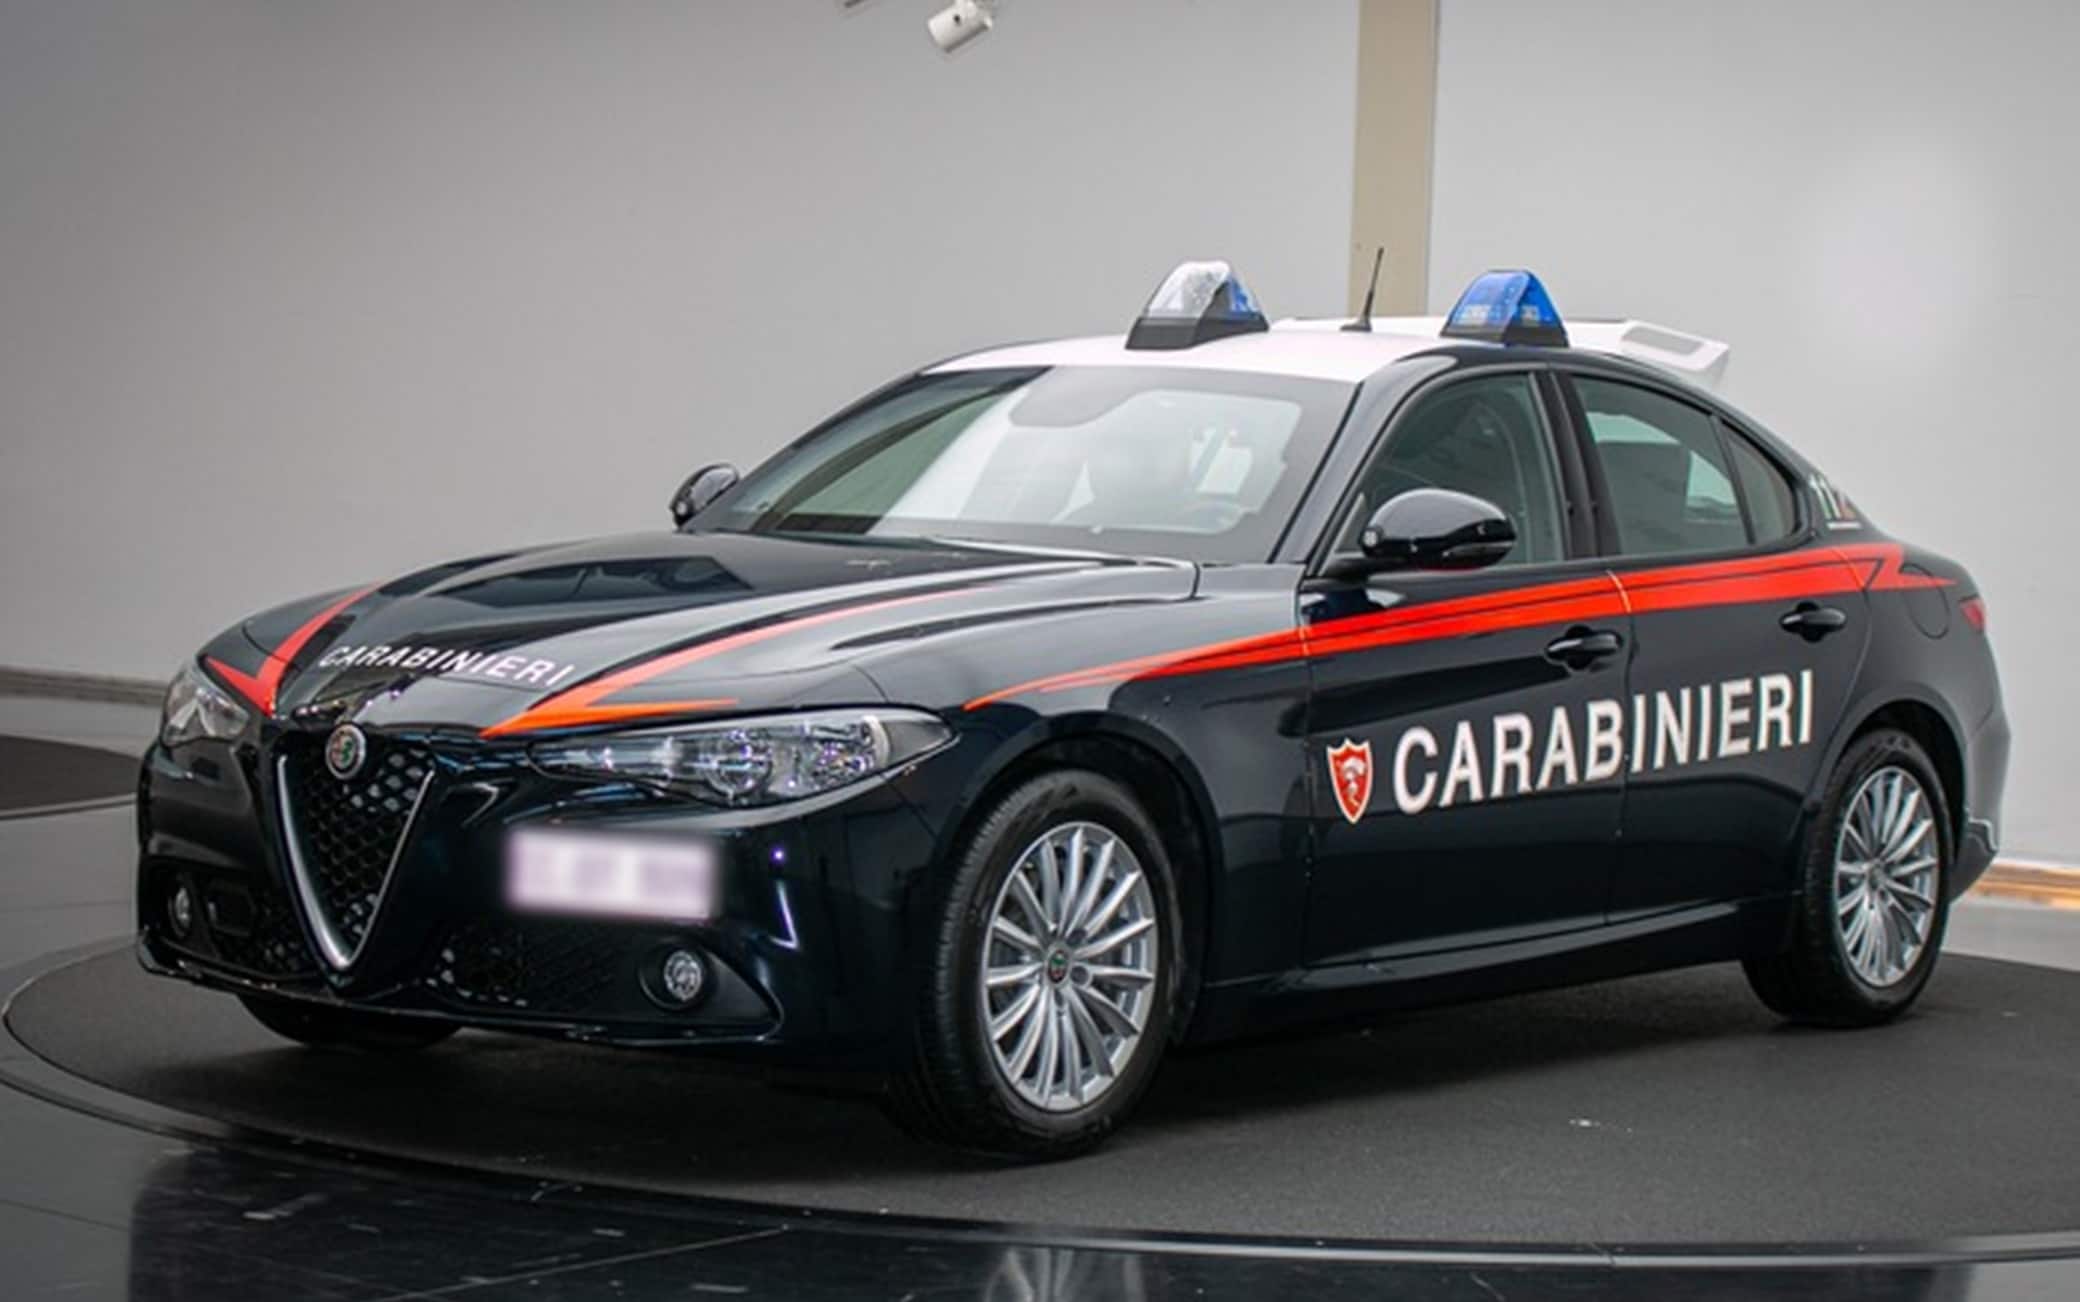 La nuova Alfa Romeo che verrà utilizzata dall'Arma dei Carabinieri